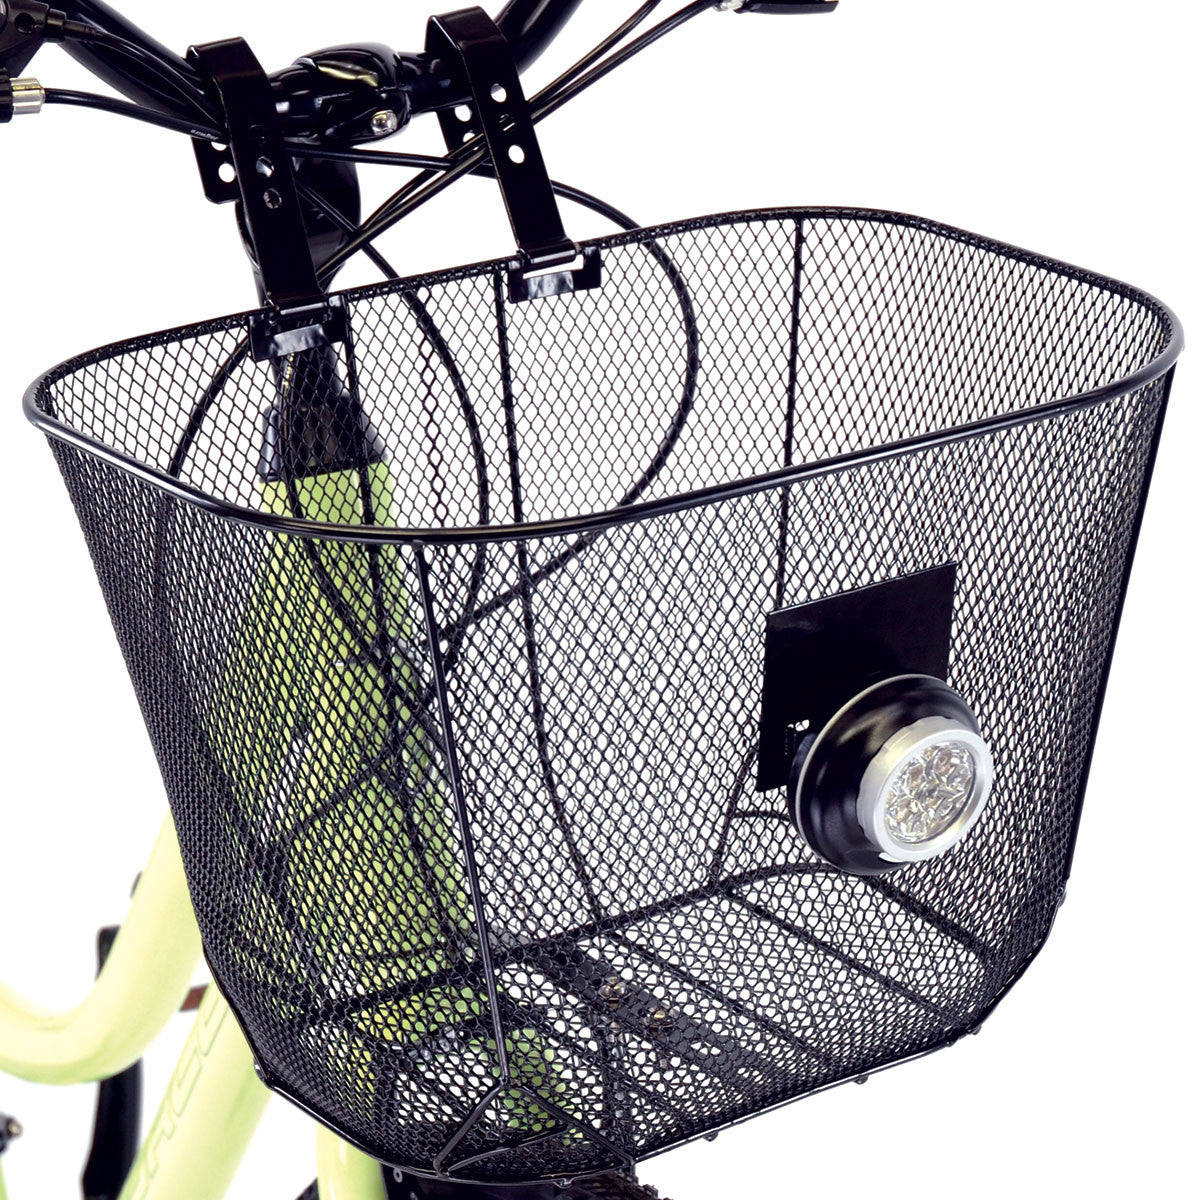 Axiom fresh mesh basket